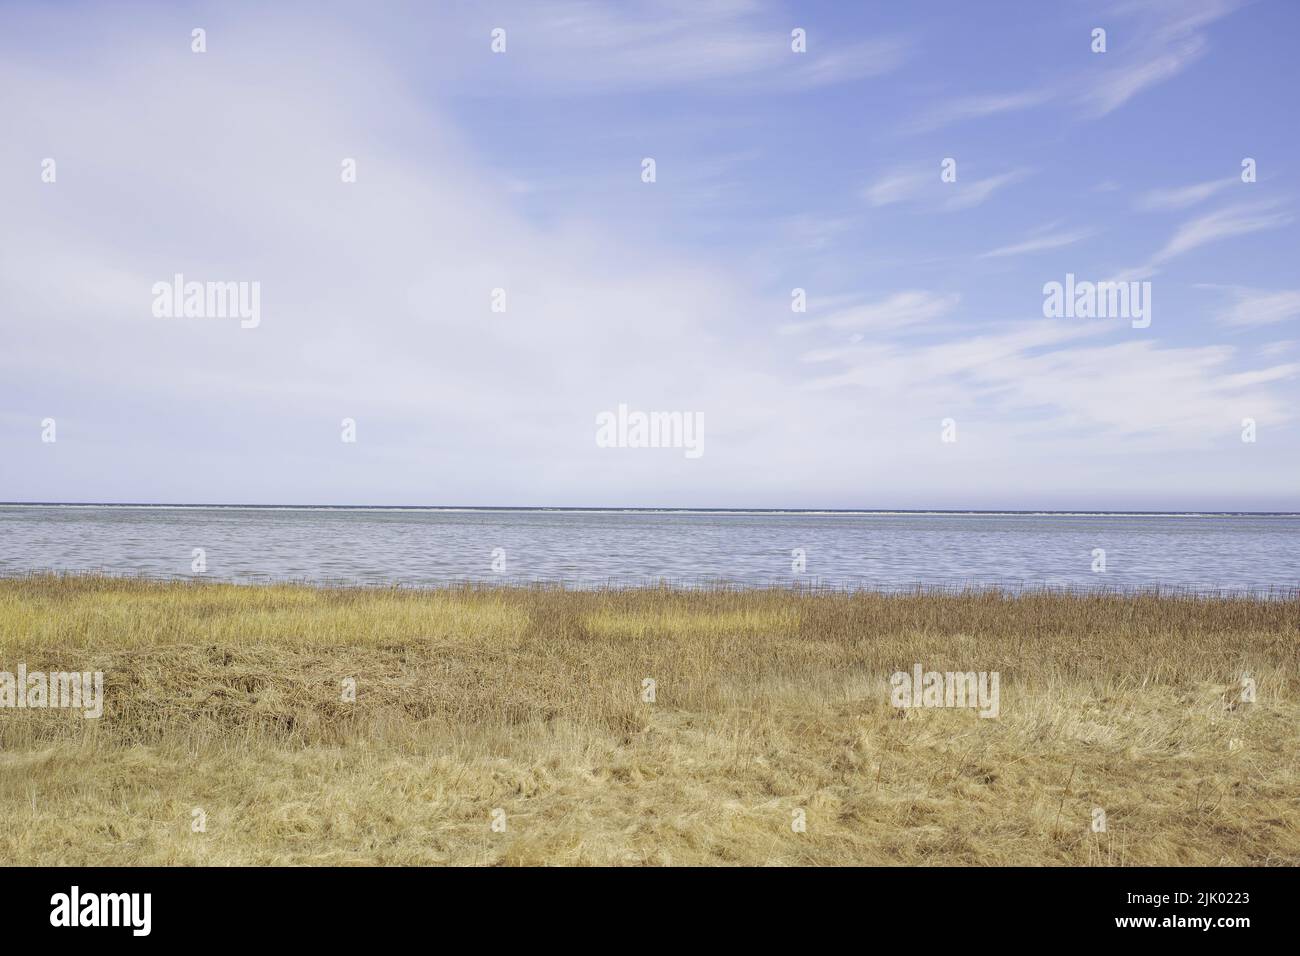 Paysage de mer, de lac ou de lagon sur fond de ciel avec espace de copie. Golfe avec roseaux et herbe sauvage poussant sur la côte vide en Norvège. Paisible Banque D'Images